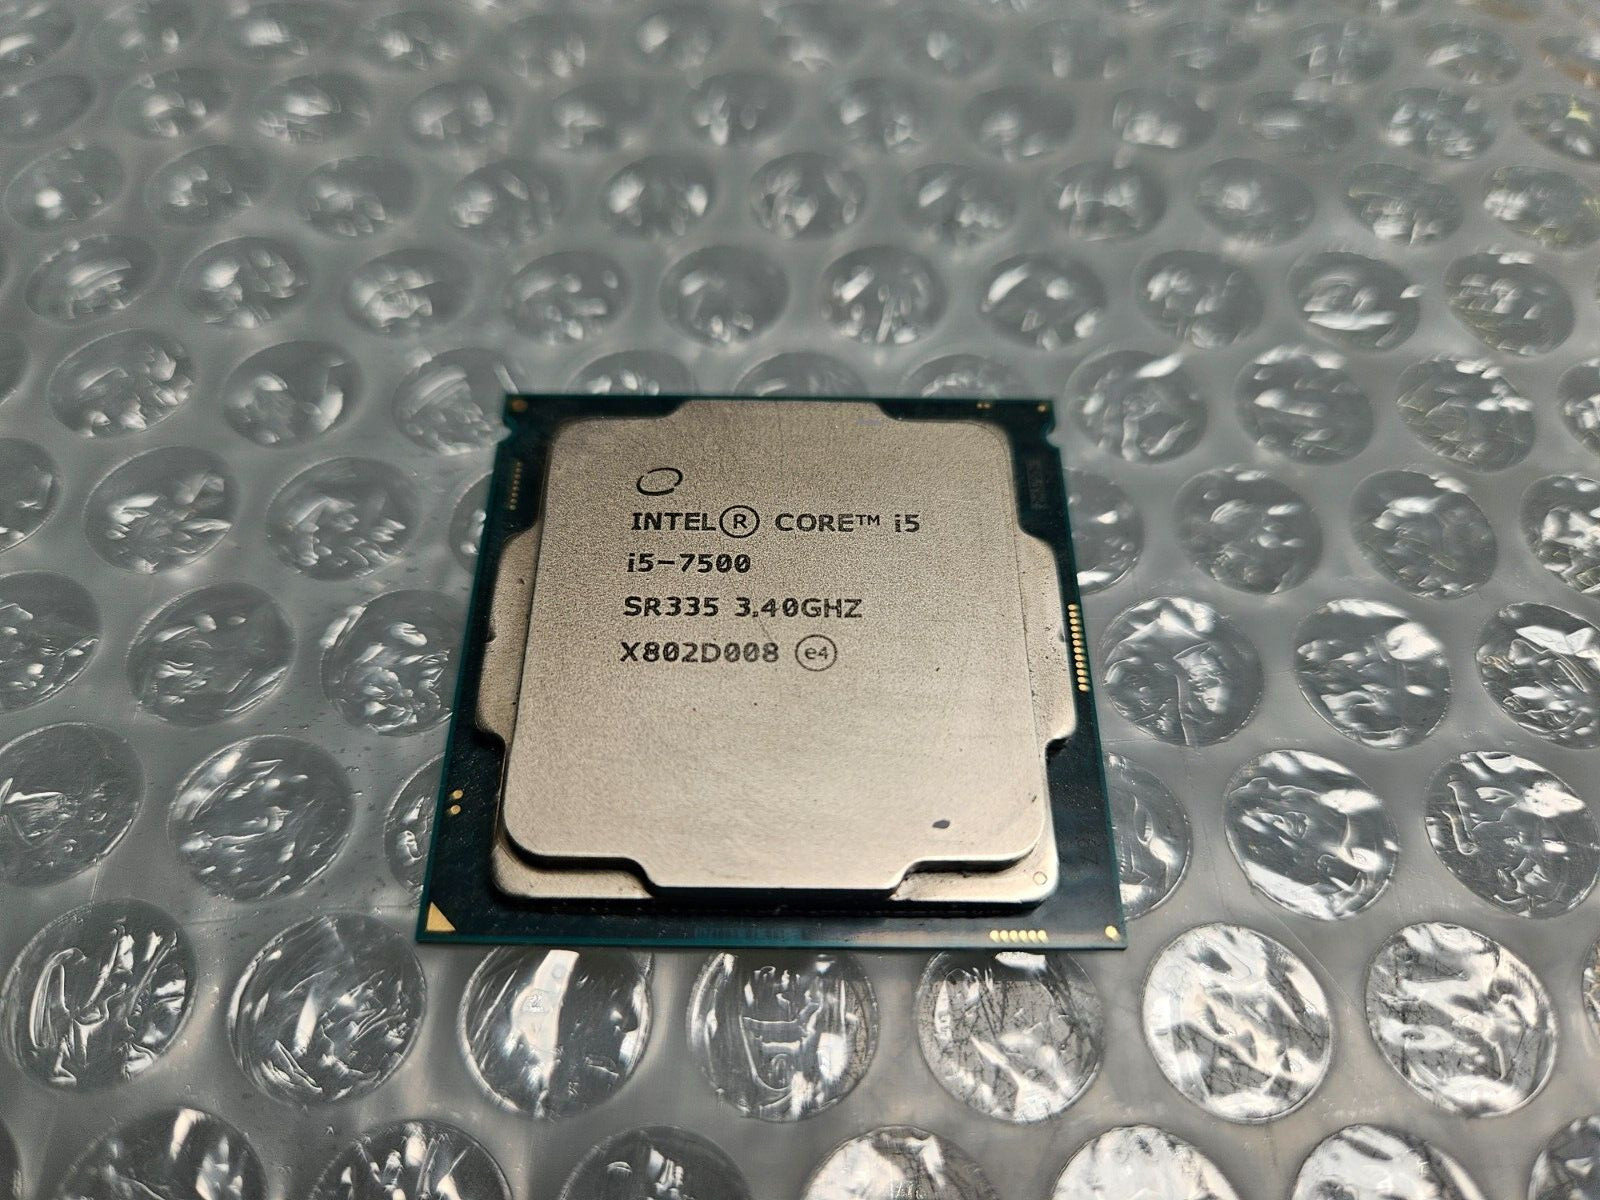 Intel Core i5-7500 SR335 3.4GHz Quad Core LGA 1151 Desktop CPU Processor